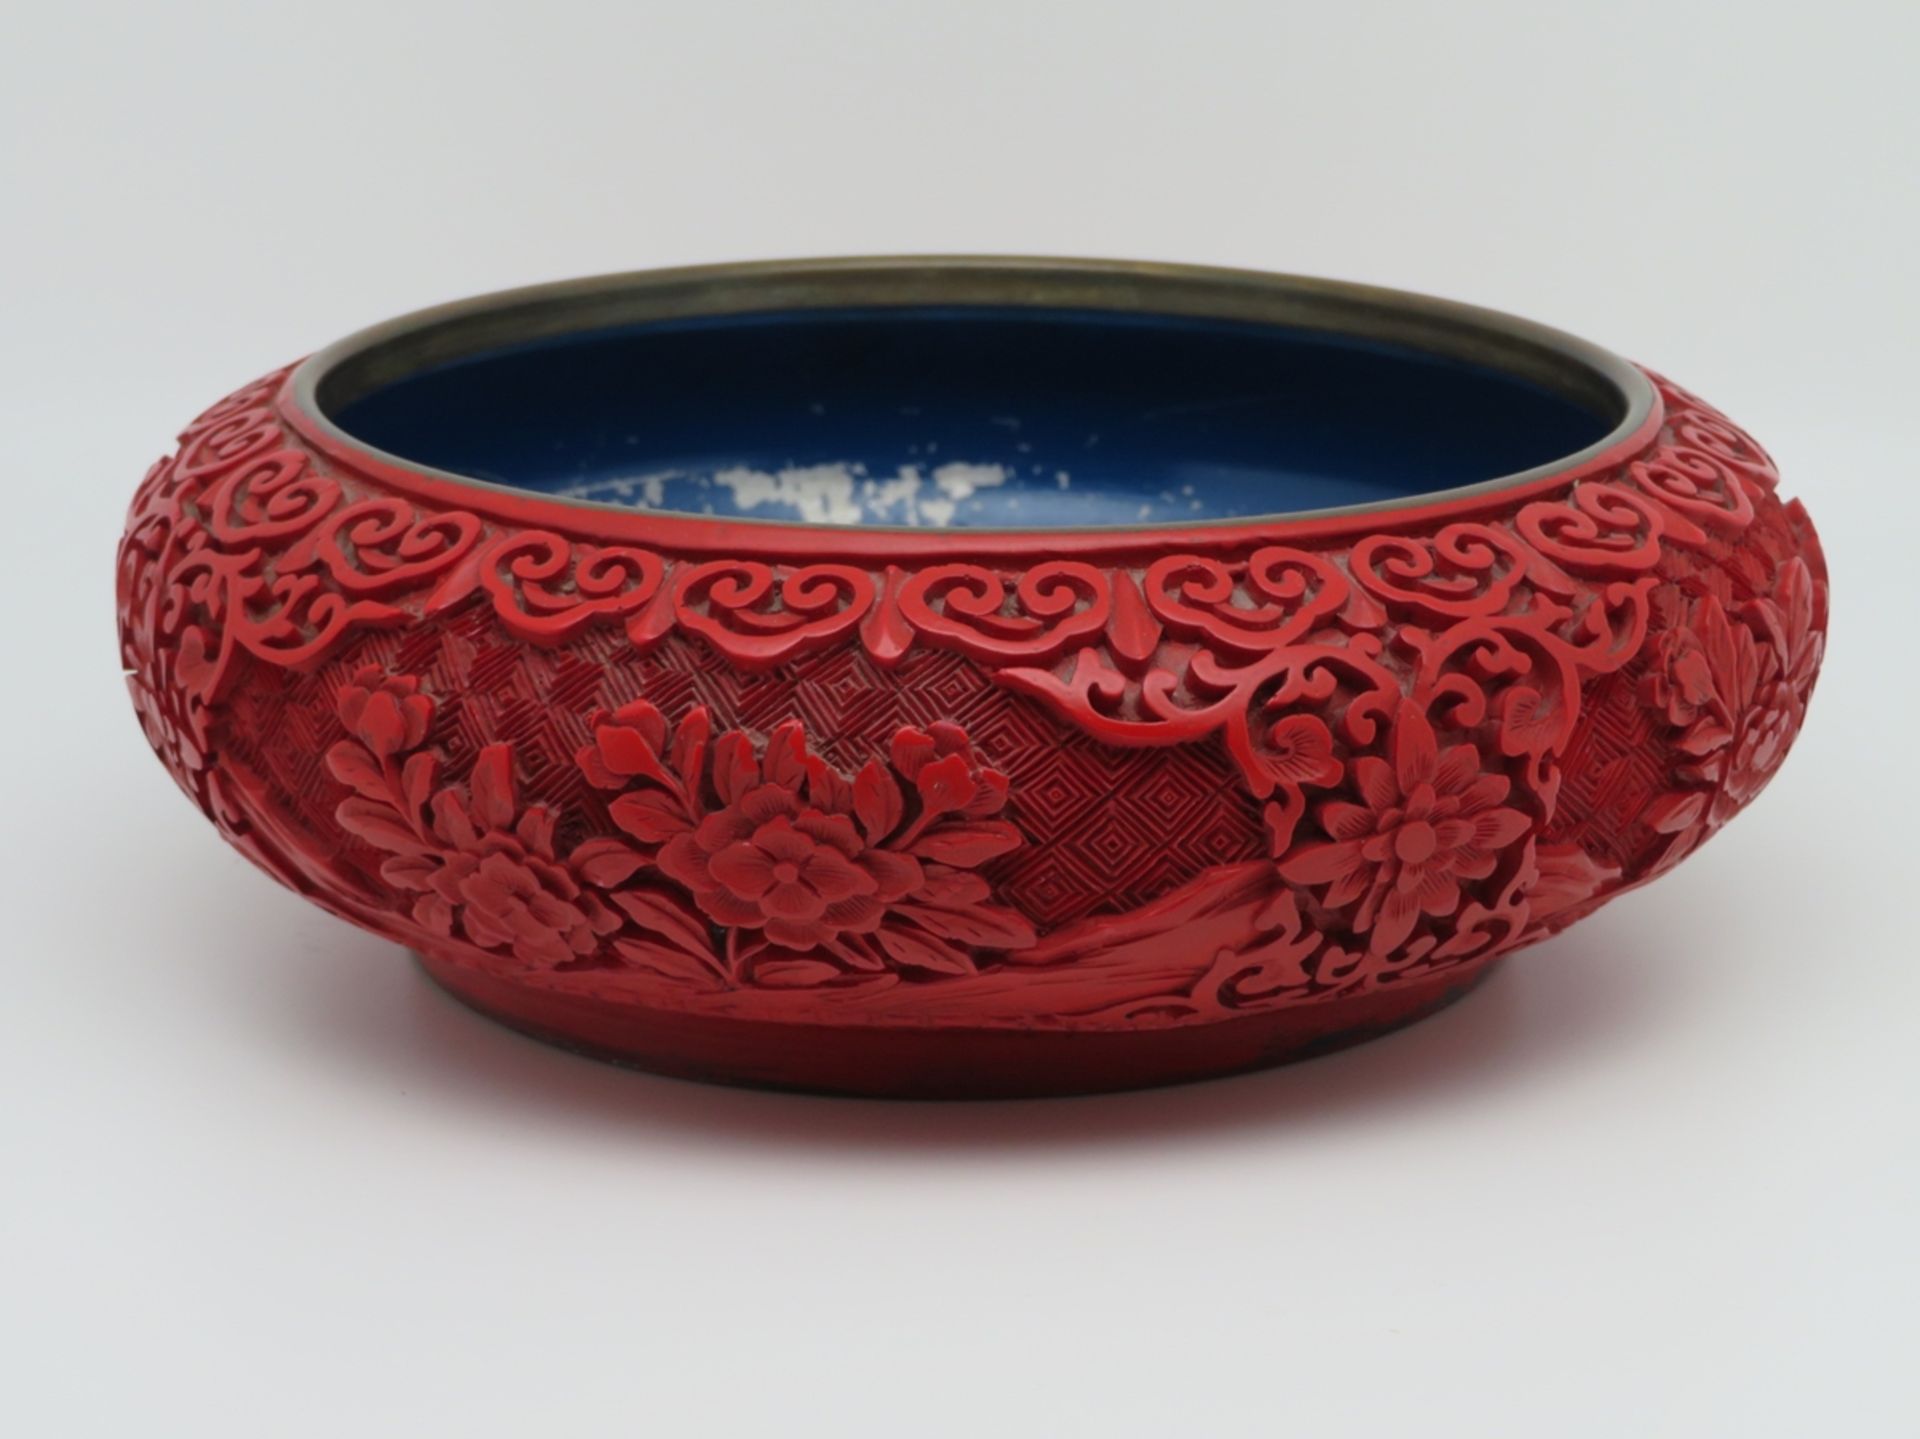 Schale, China, rote Chinalackarbeit reich geschnitzt, h 6,5 cm, d 19,5 cm.